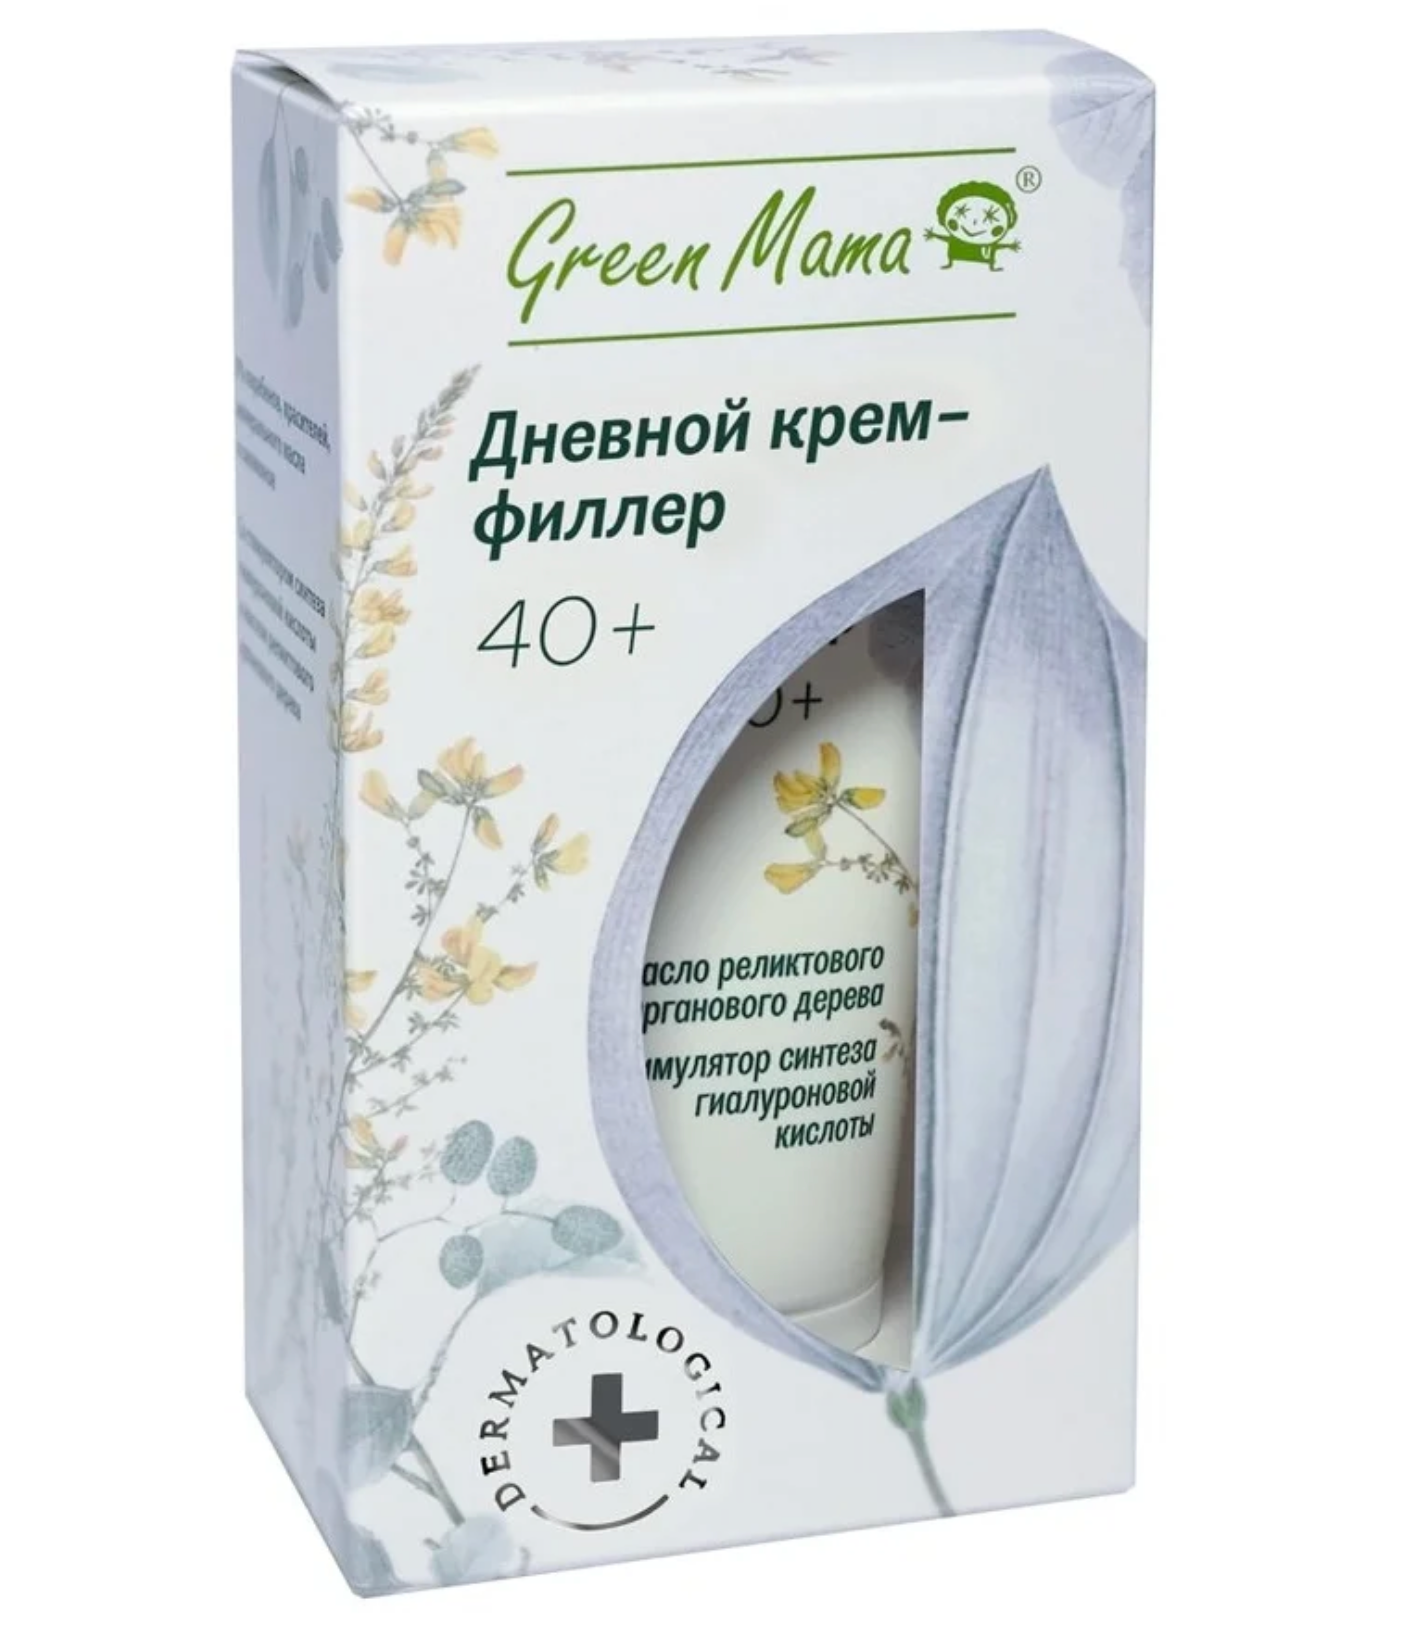 Грин Мама / Green Mama - Крем-филлер для лица дневной 40+ масло арганового дерева 50 мл